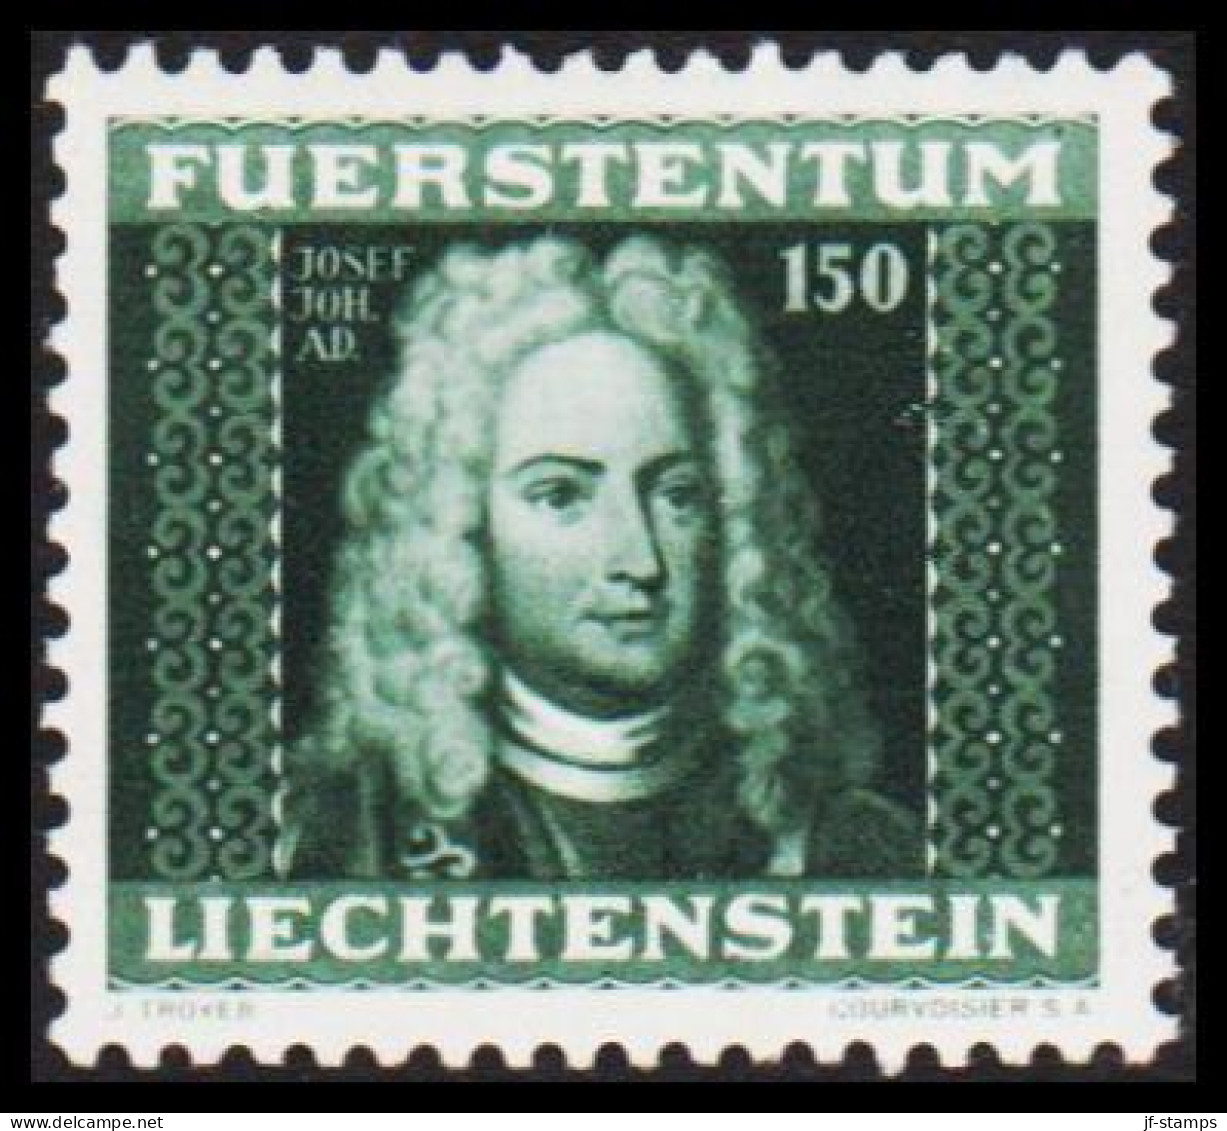 1941. LIECHTENSTEIN. Fürsten. Joseph 150 Rp. Never Hinged. (Michel 201) - JF544607 - Unused Stamps